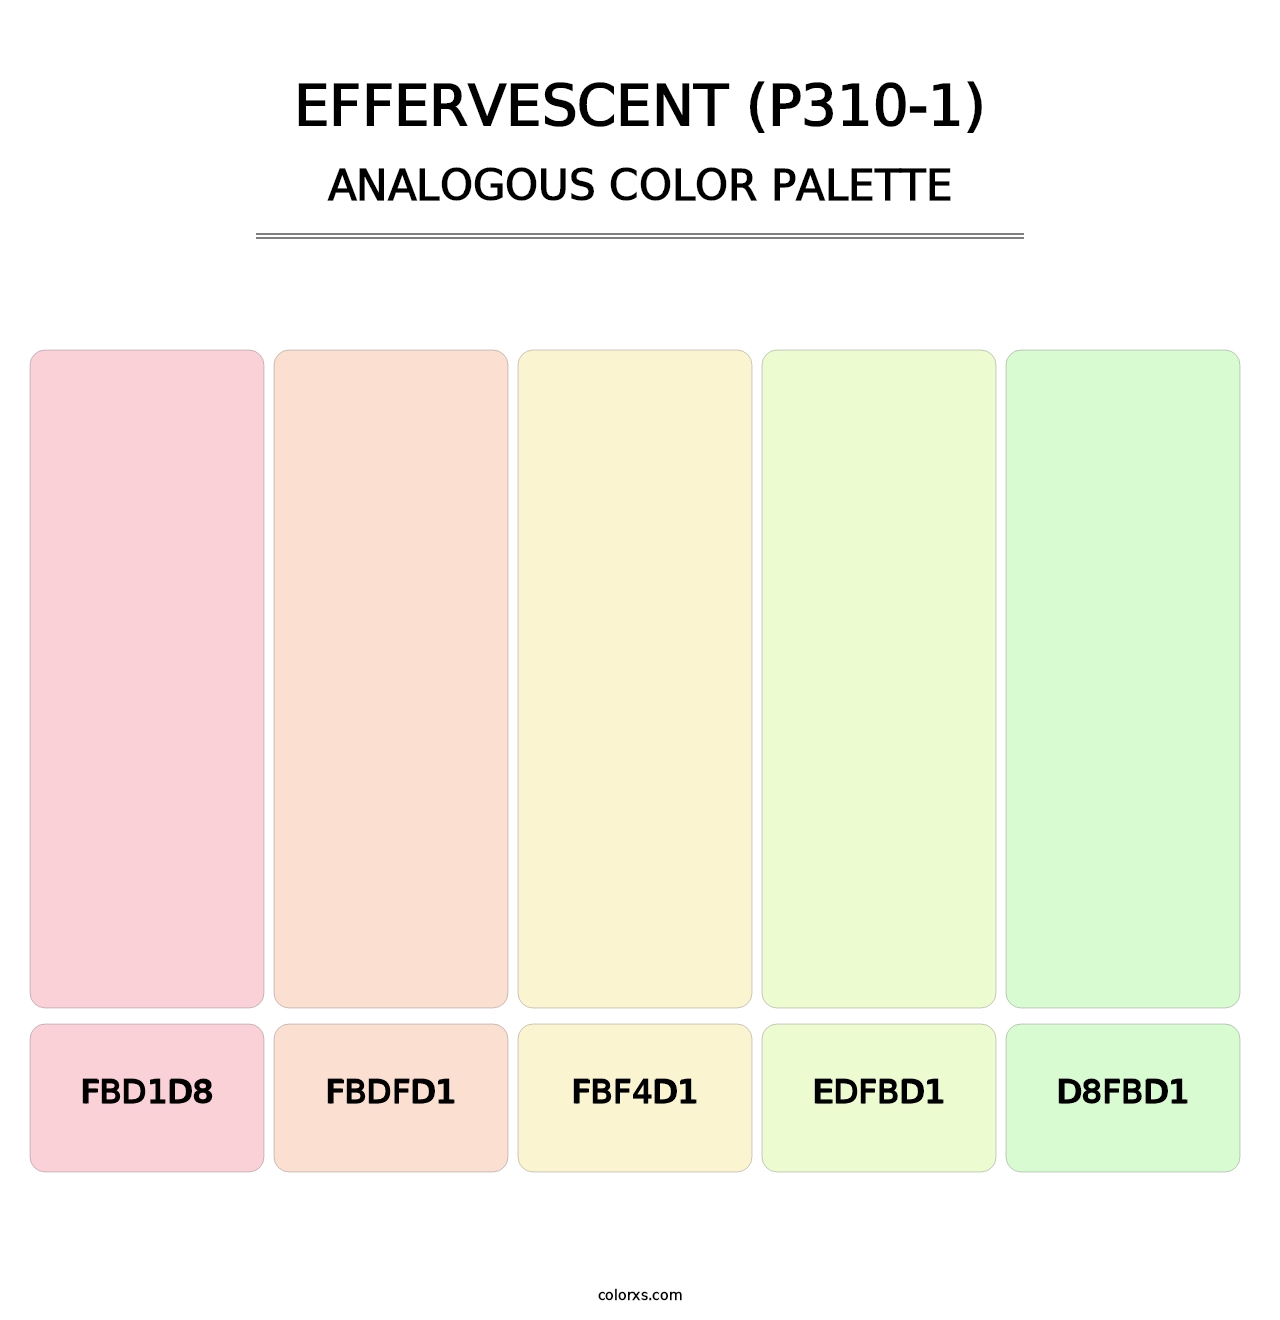 Effervescent (P310-1) - Analogous Color Palette